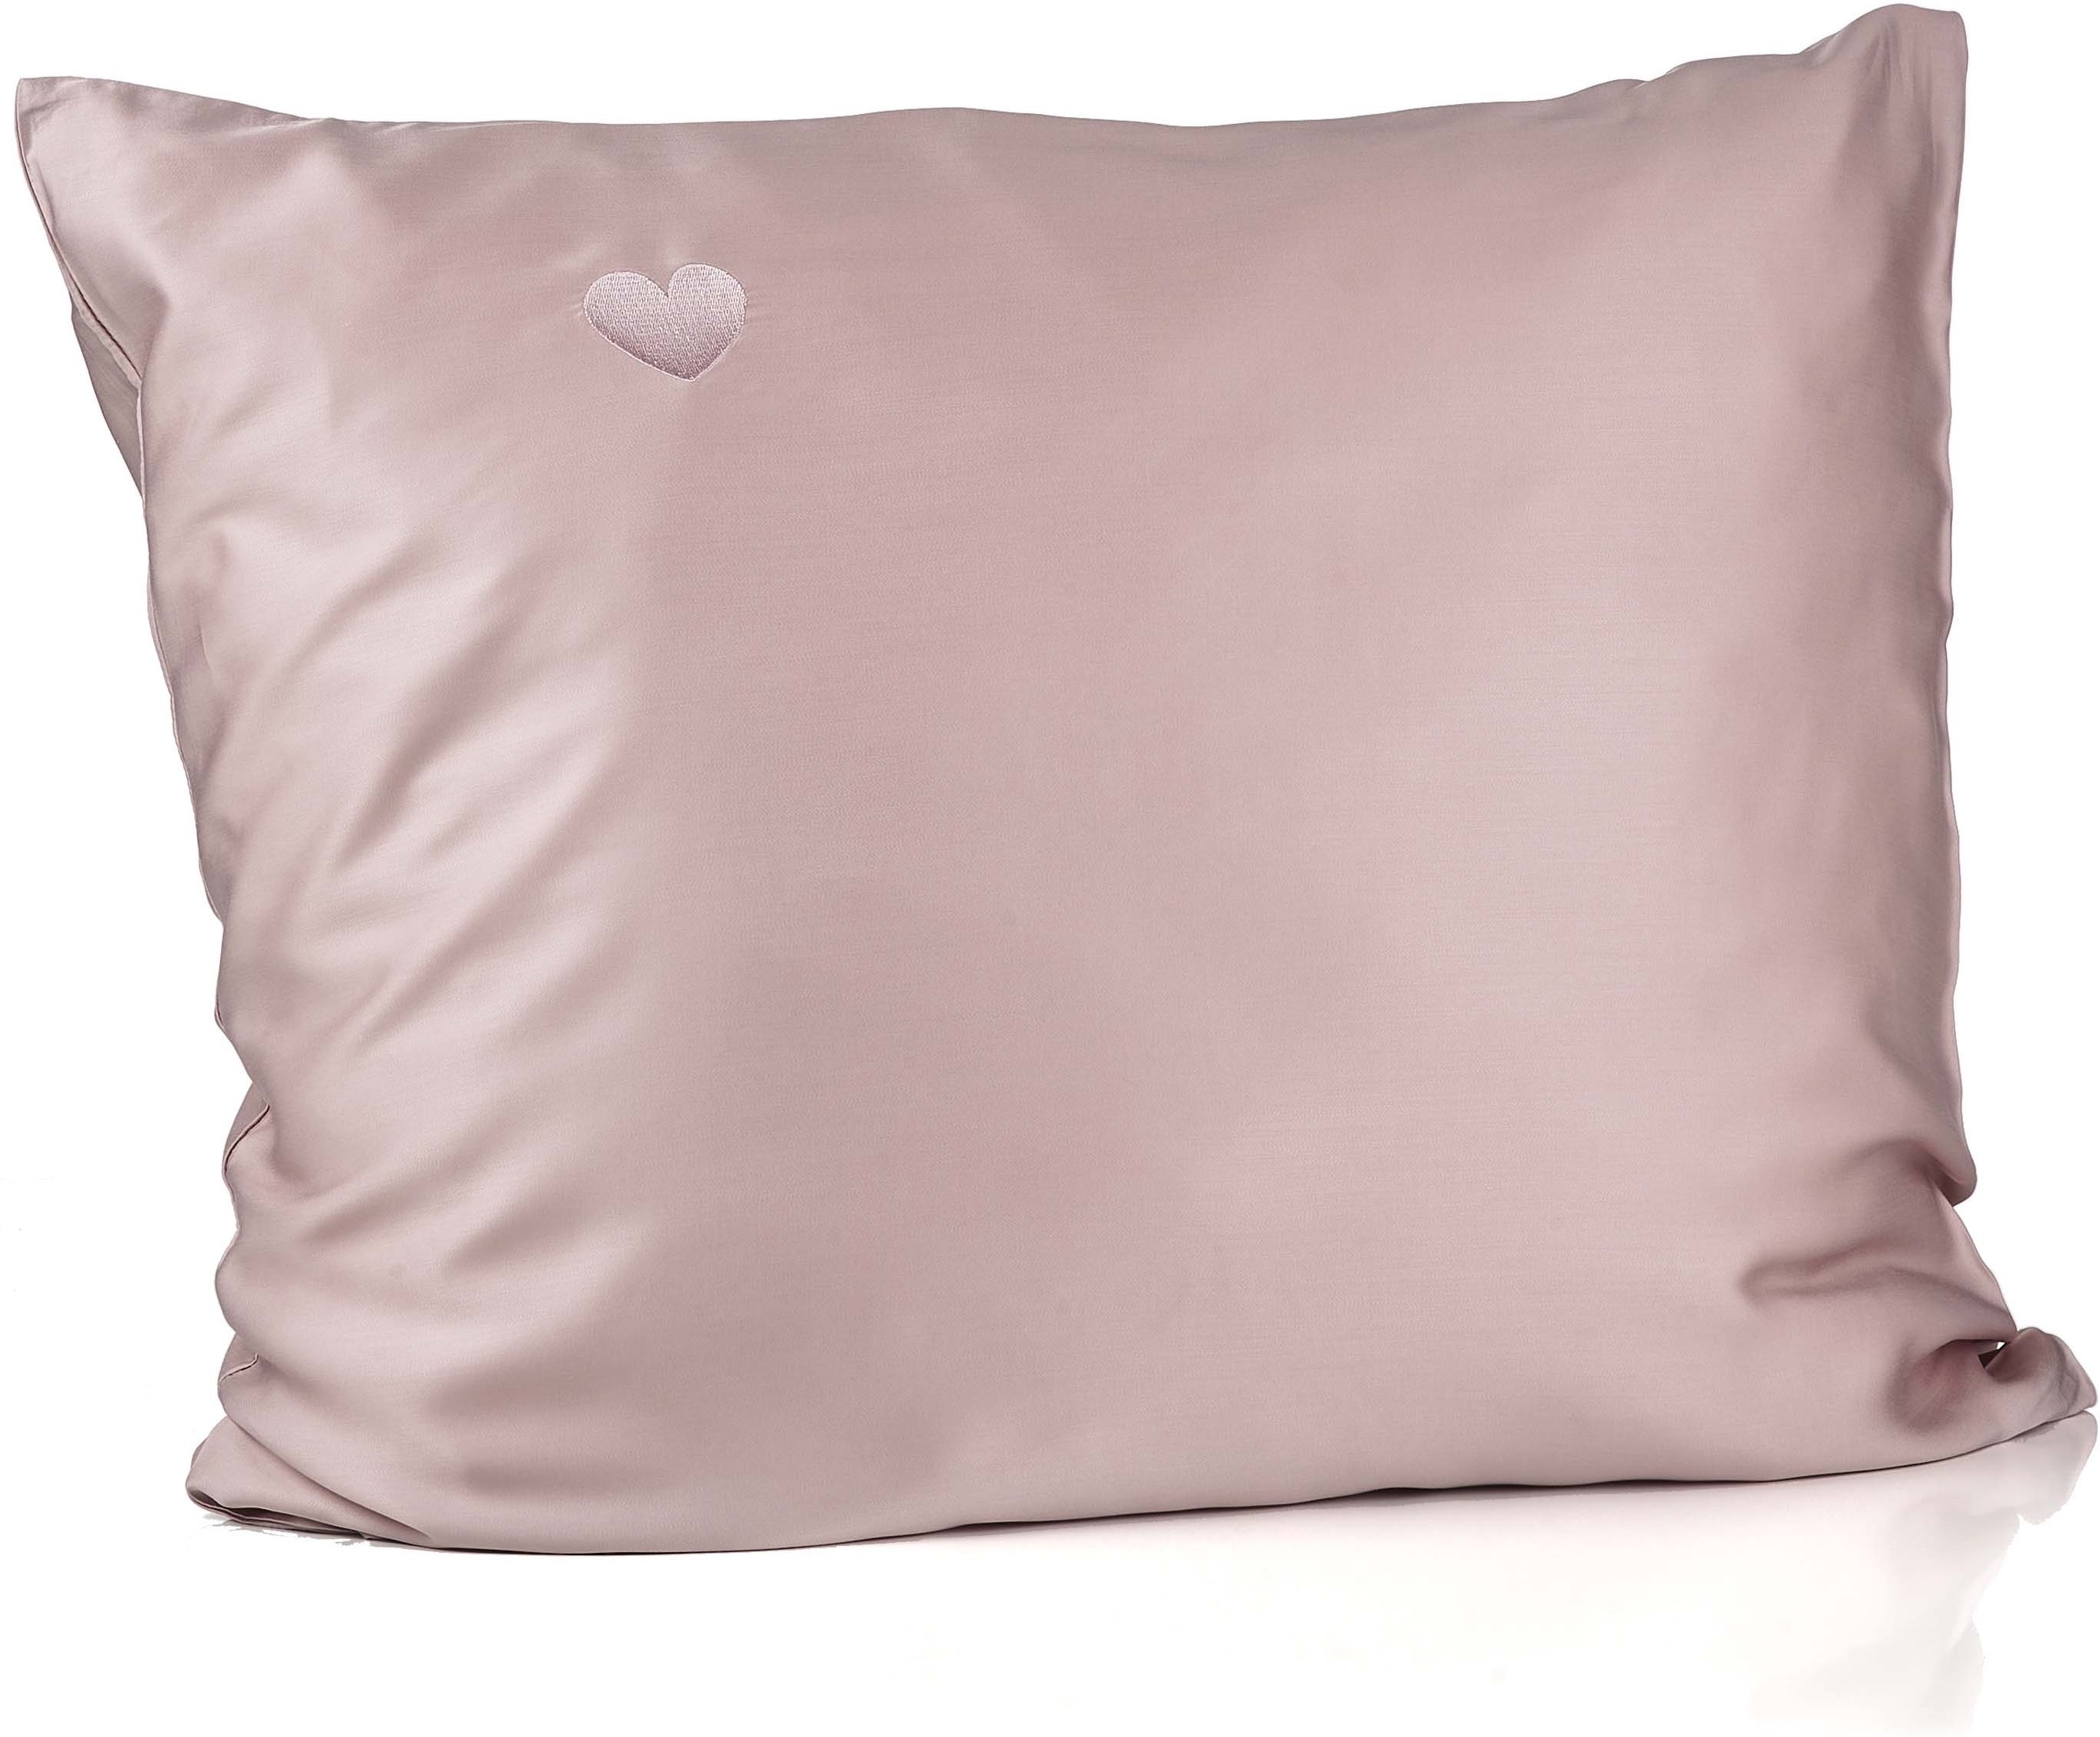 Yuaia Haircare Bamboo Pillowcase Pink